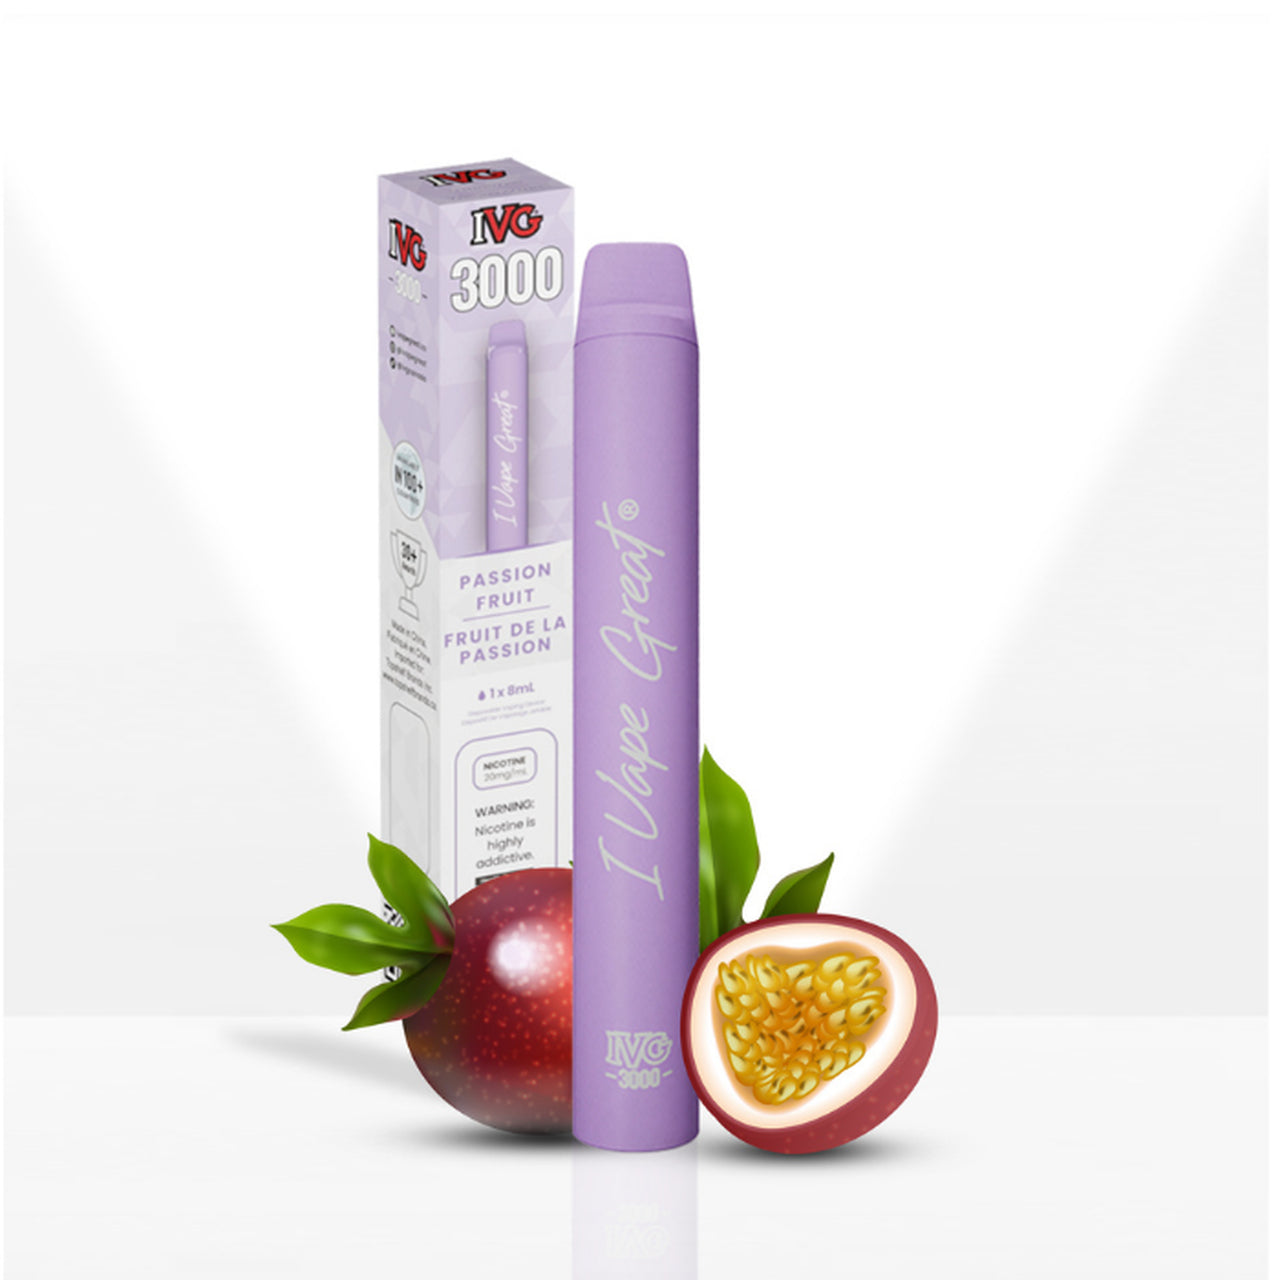 Passion Fruit - IVG 3000 Puffs Disposable Vape - 6ct